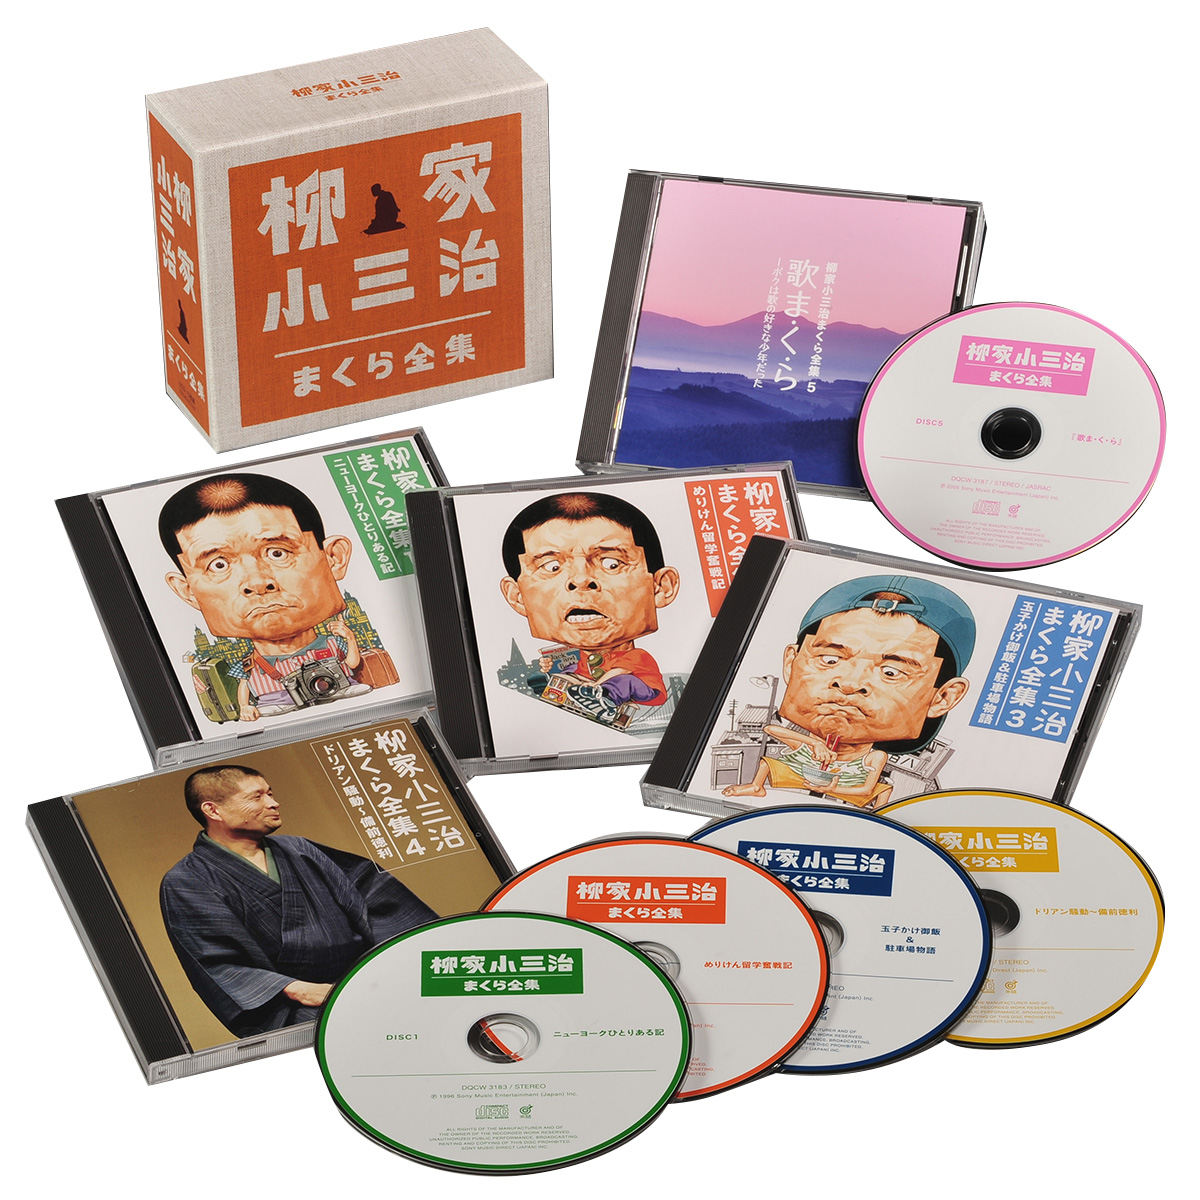 【CD】柳家小三治 まくら全集 5枚組